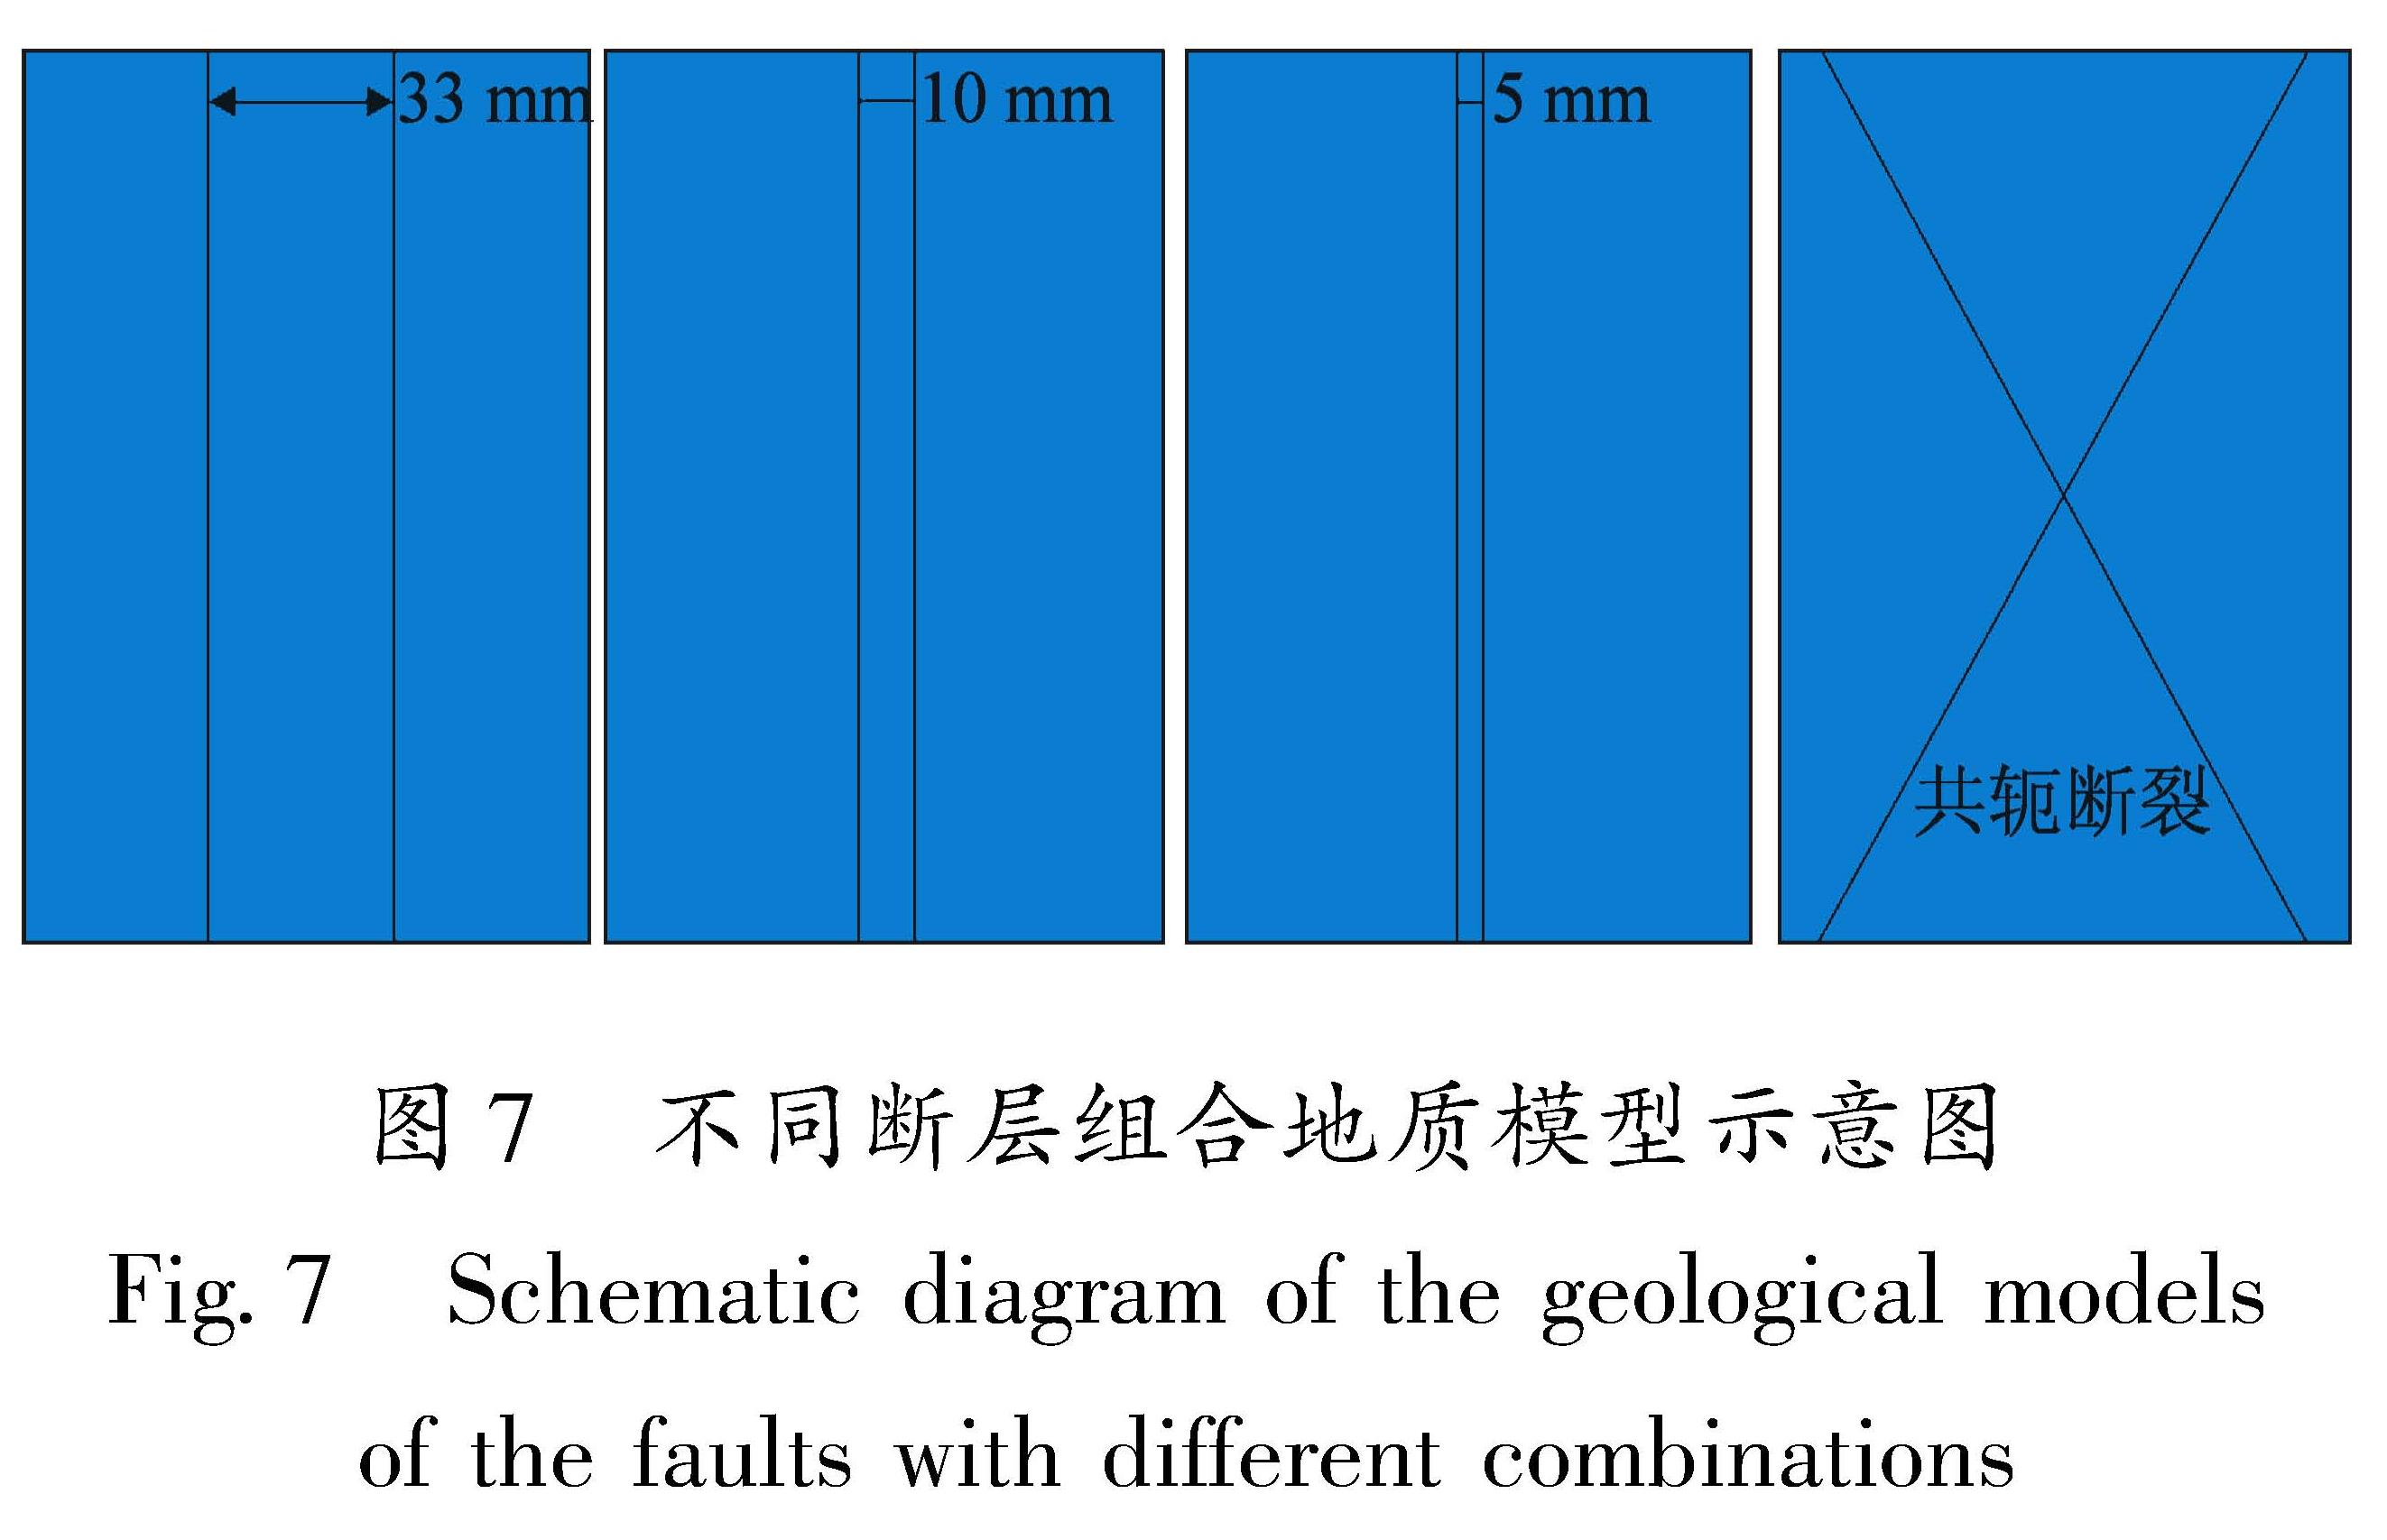 图7 不同断层组合地质模型示意图<br/>Fig.7 Schematic diagram of the geological models of the faults with different combinations